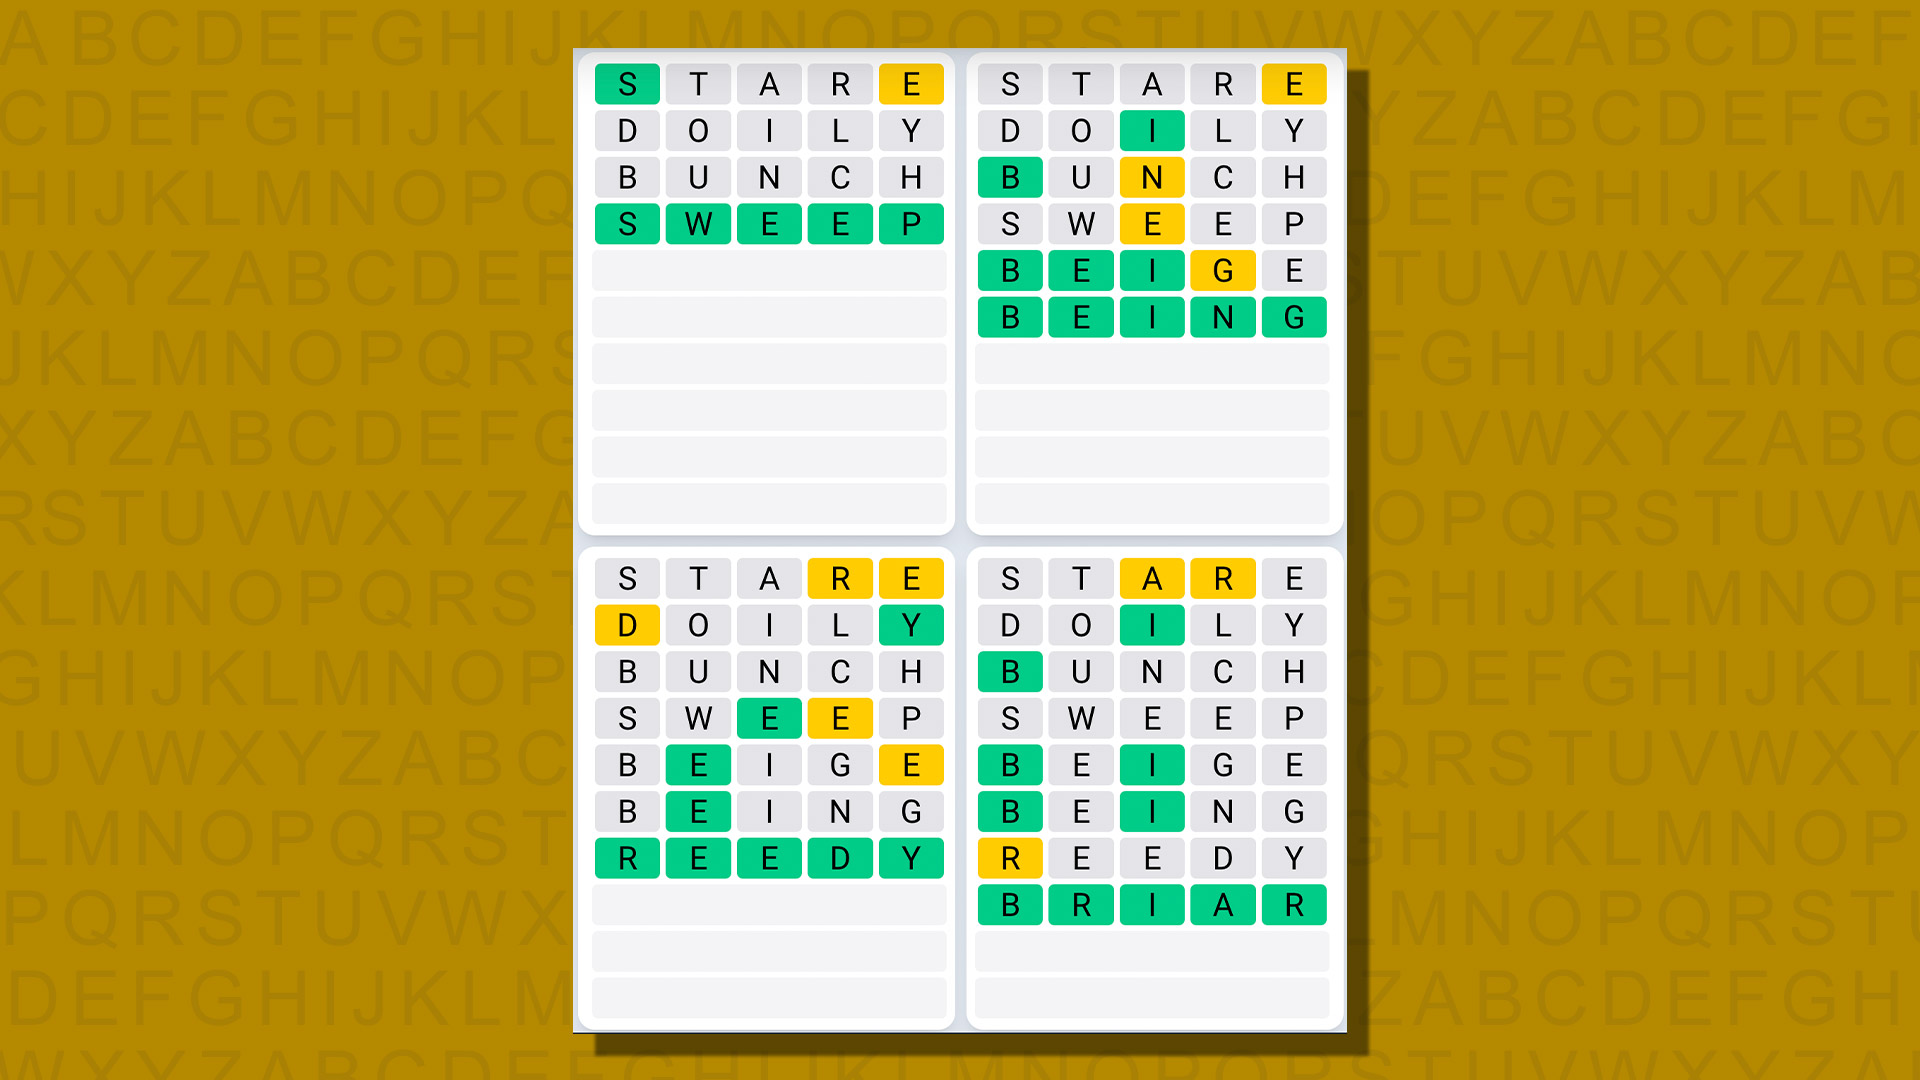 Ежедневная последовательность ответов Quordle для игры 713 на желтом фоне